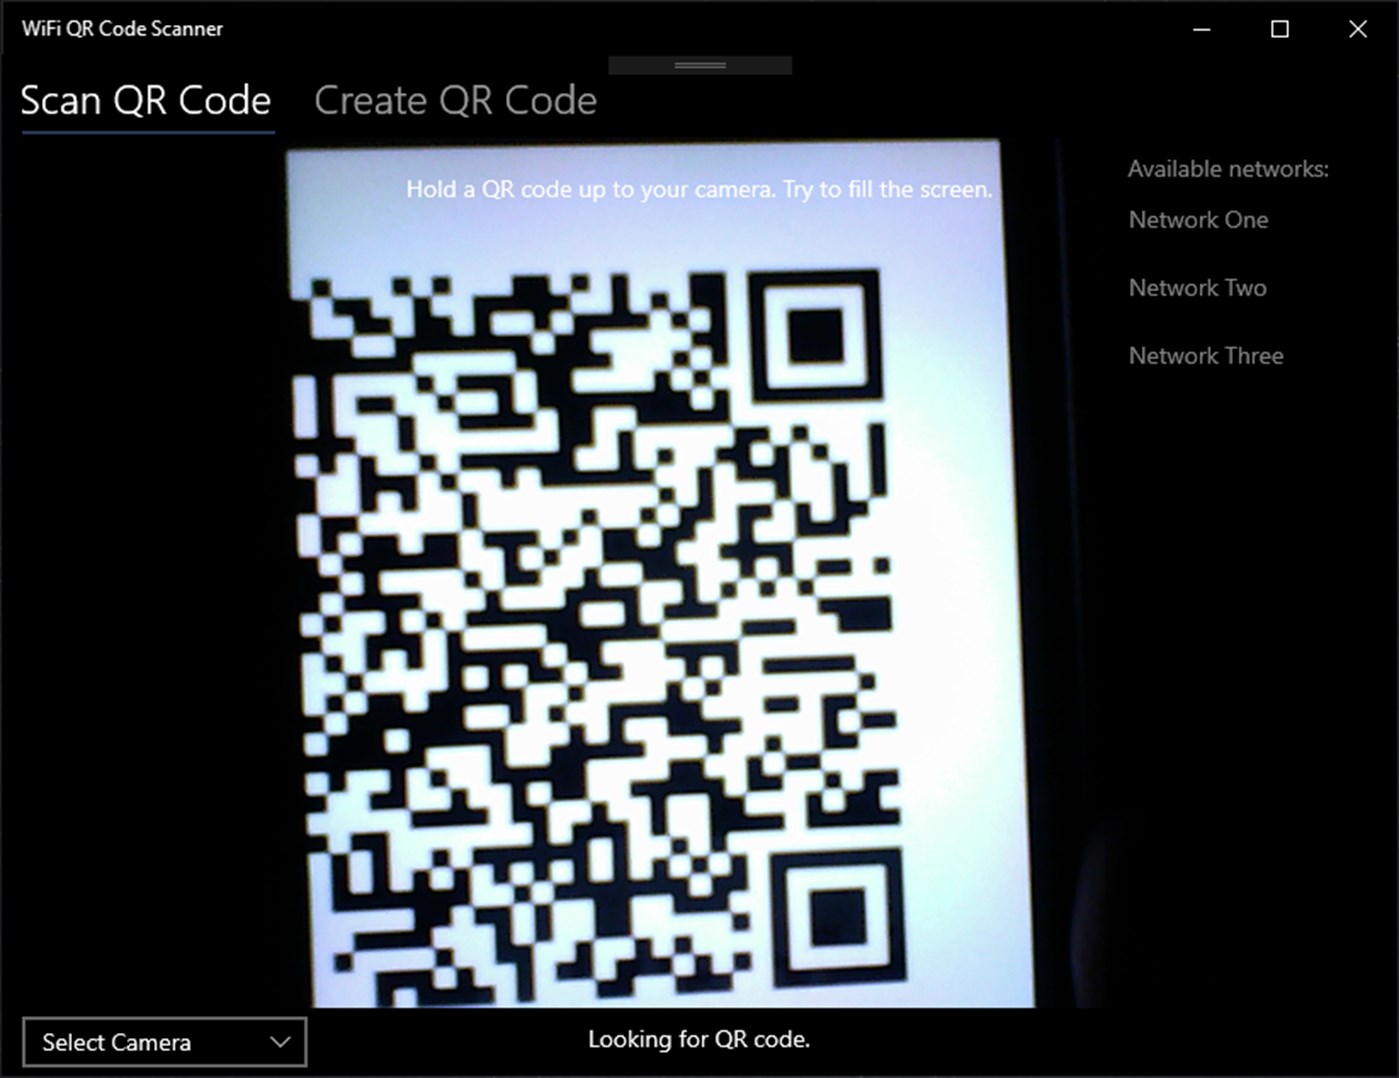 web based qr code scanner